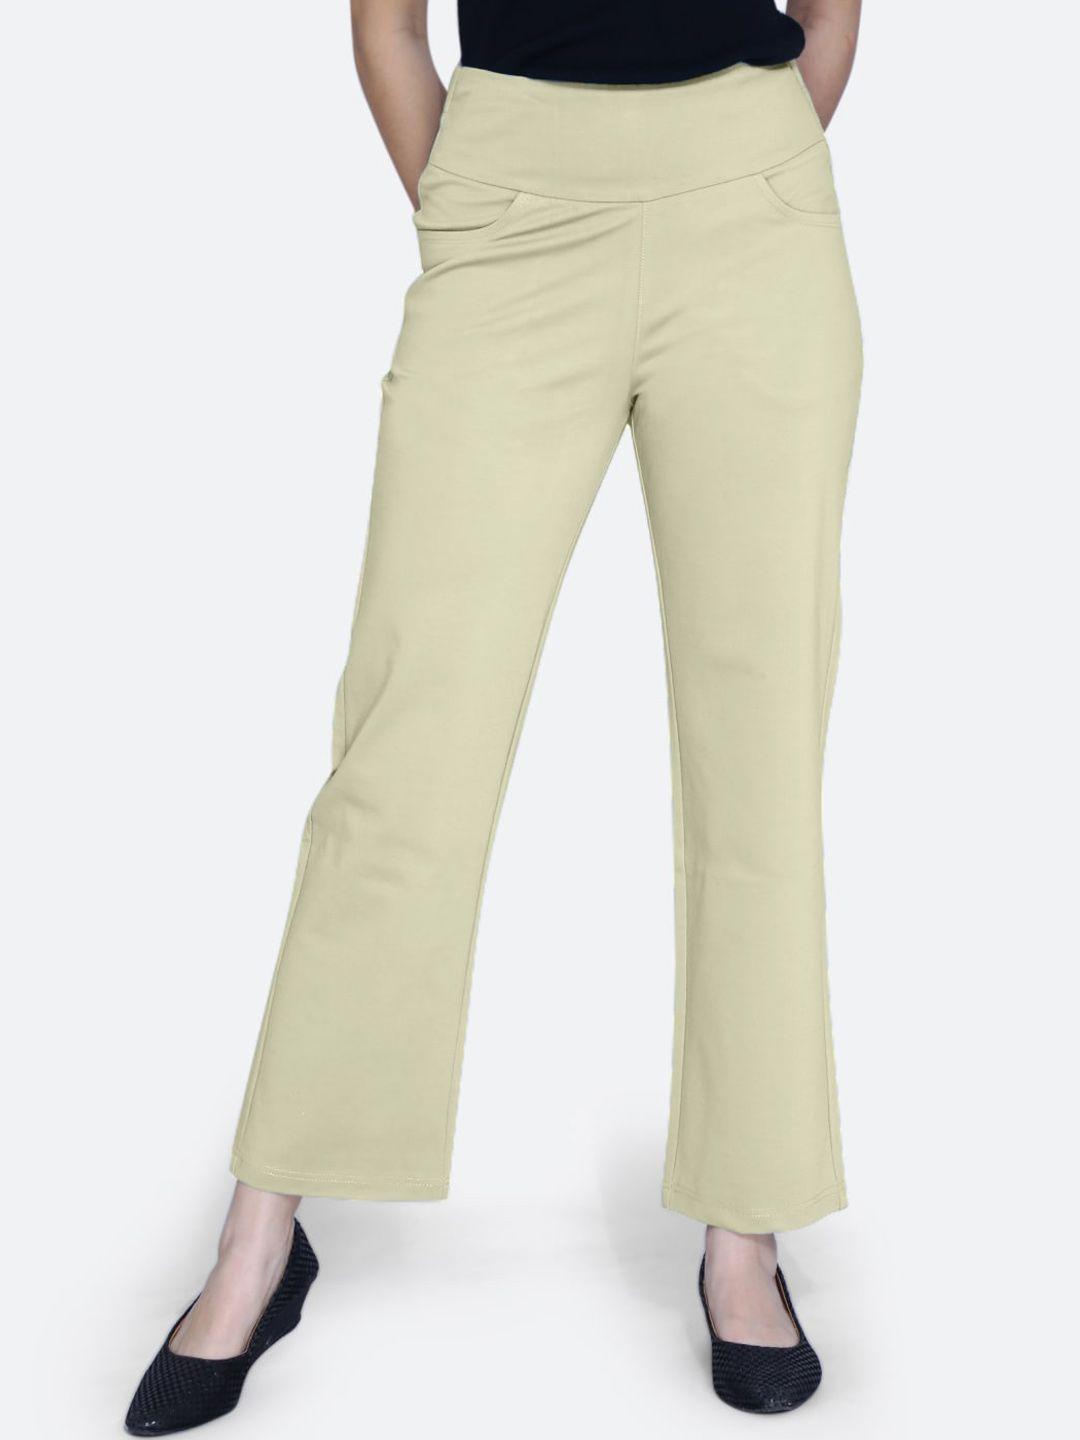 fck-3 women high-rise cotton relaxed straight leg bootcut trouser